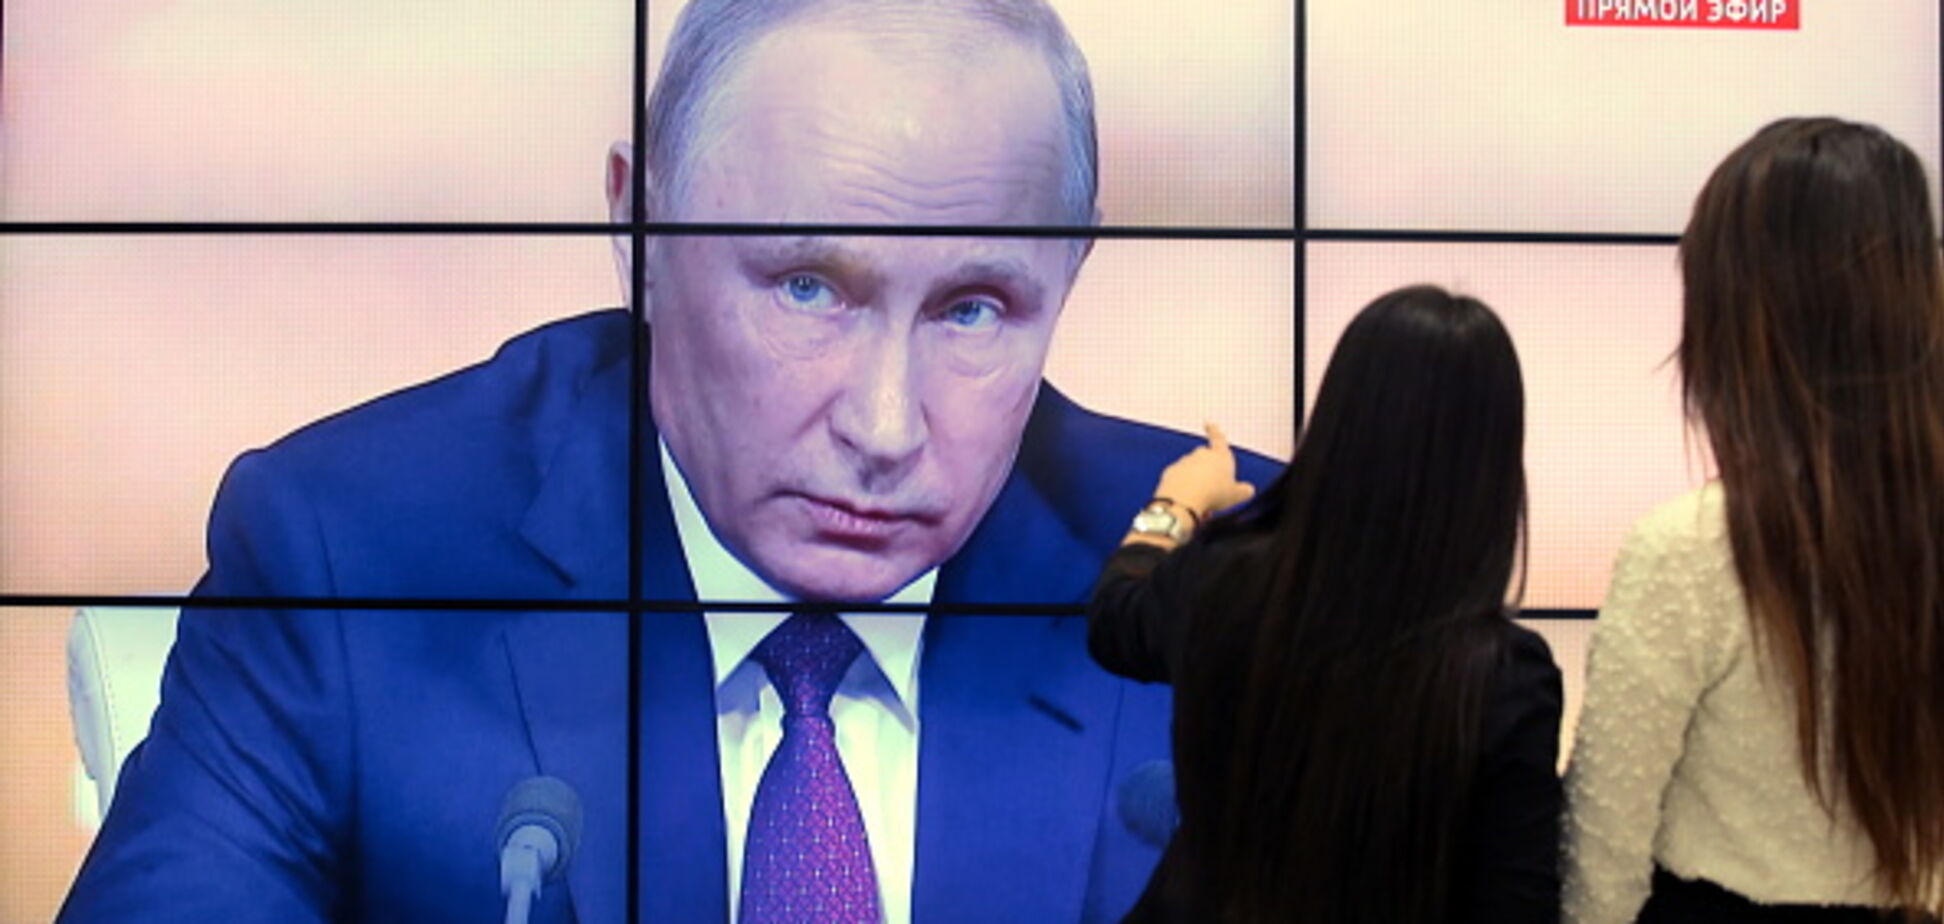 Что наговорил за 3,5 часа: в сети показали заявления Путина 'одной картинкой'